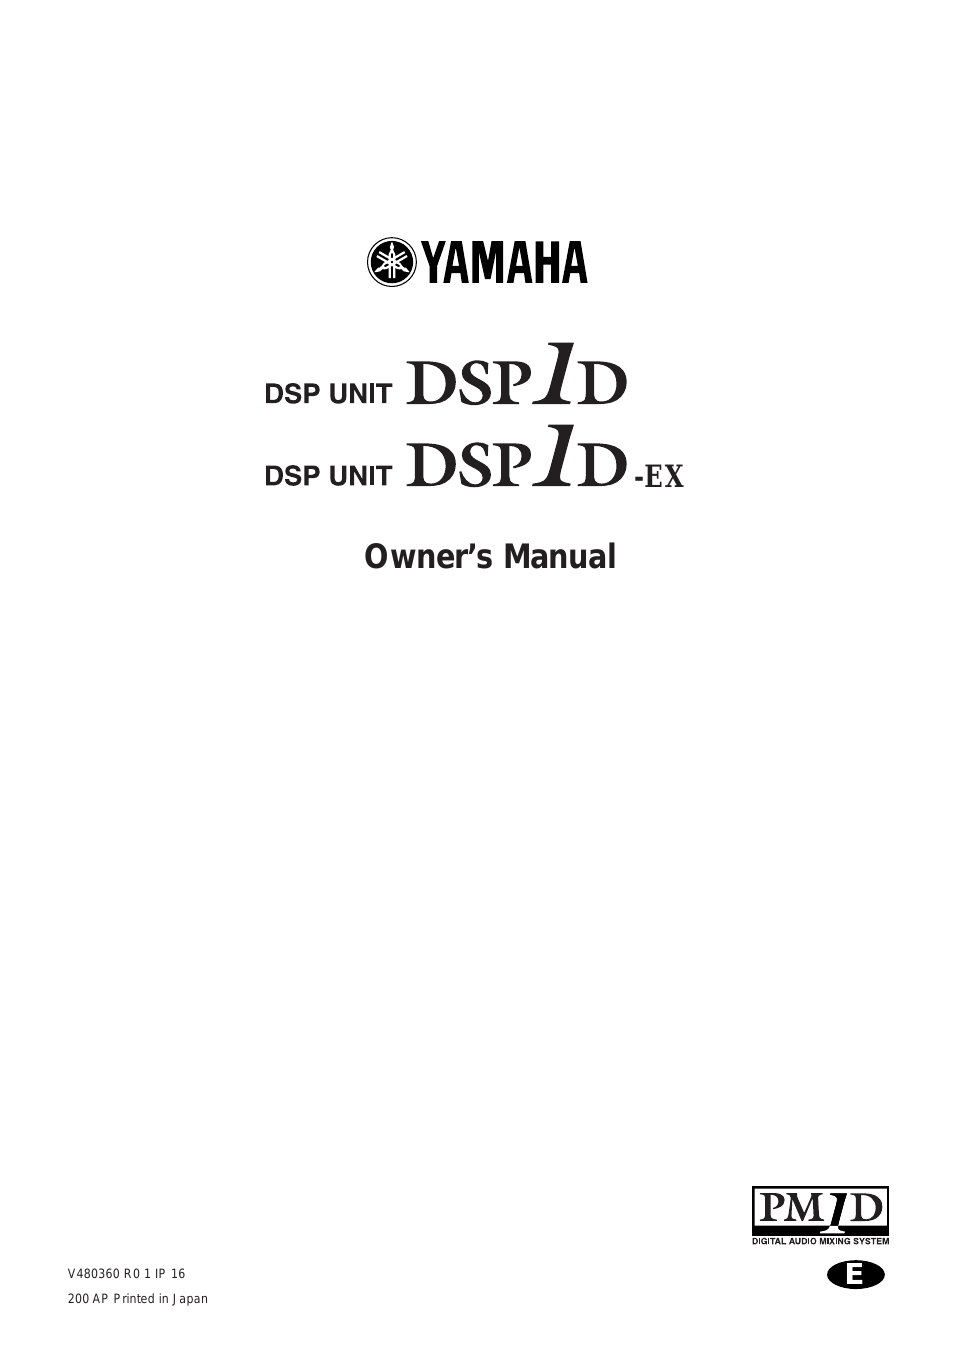 DSP1D-EX